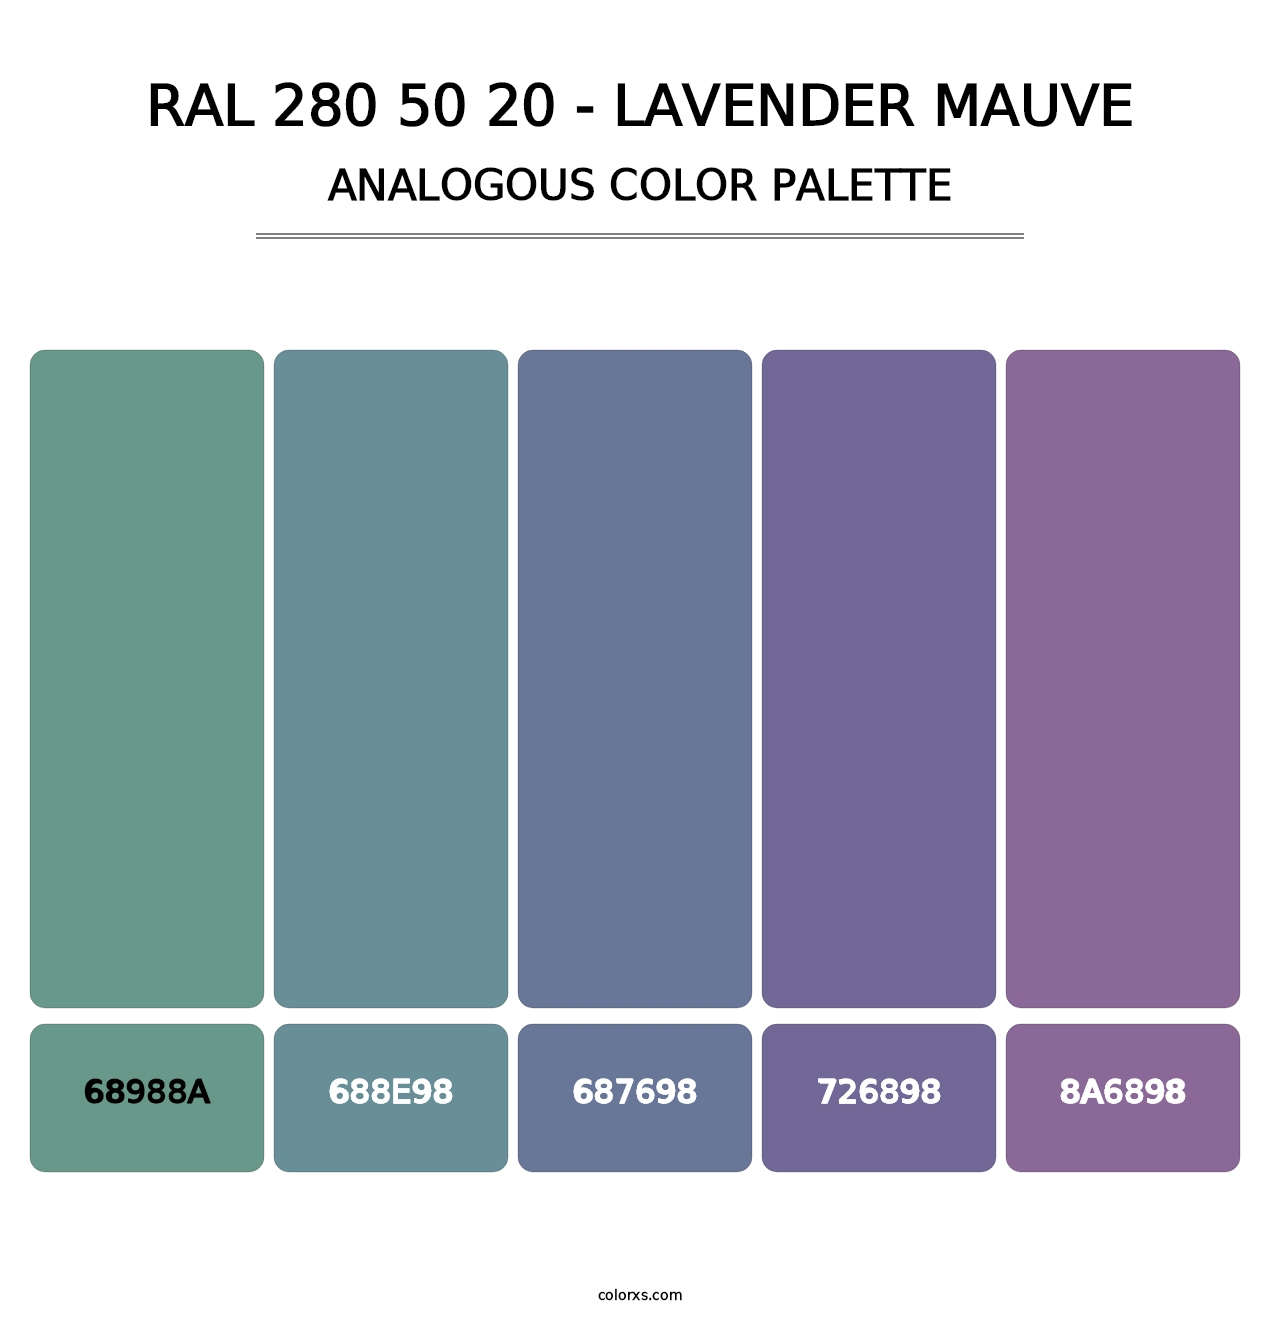 RAL 280 50 20 - Lavender Mauve - Analogous Color Palette